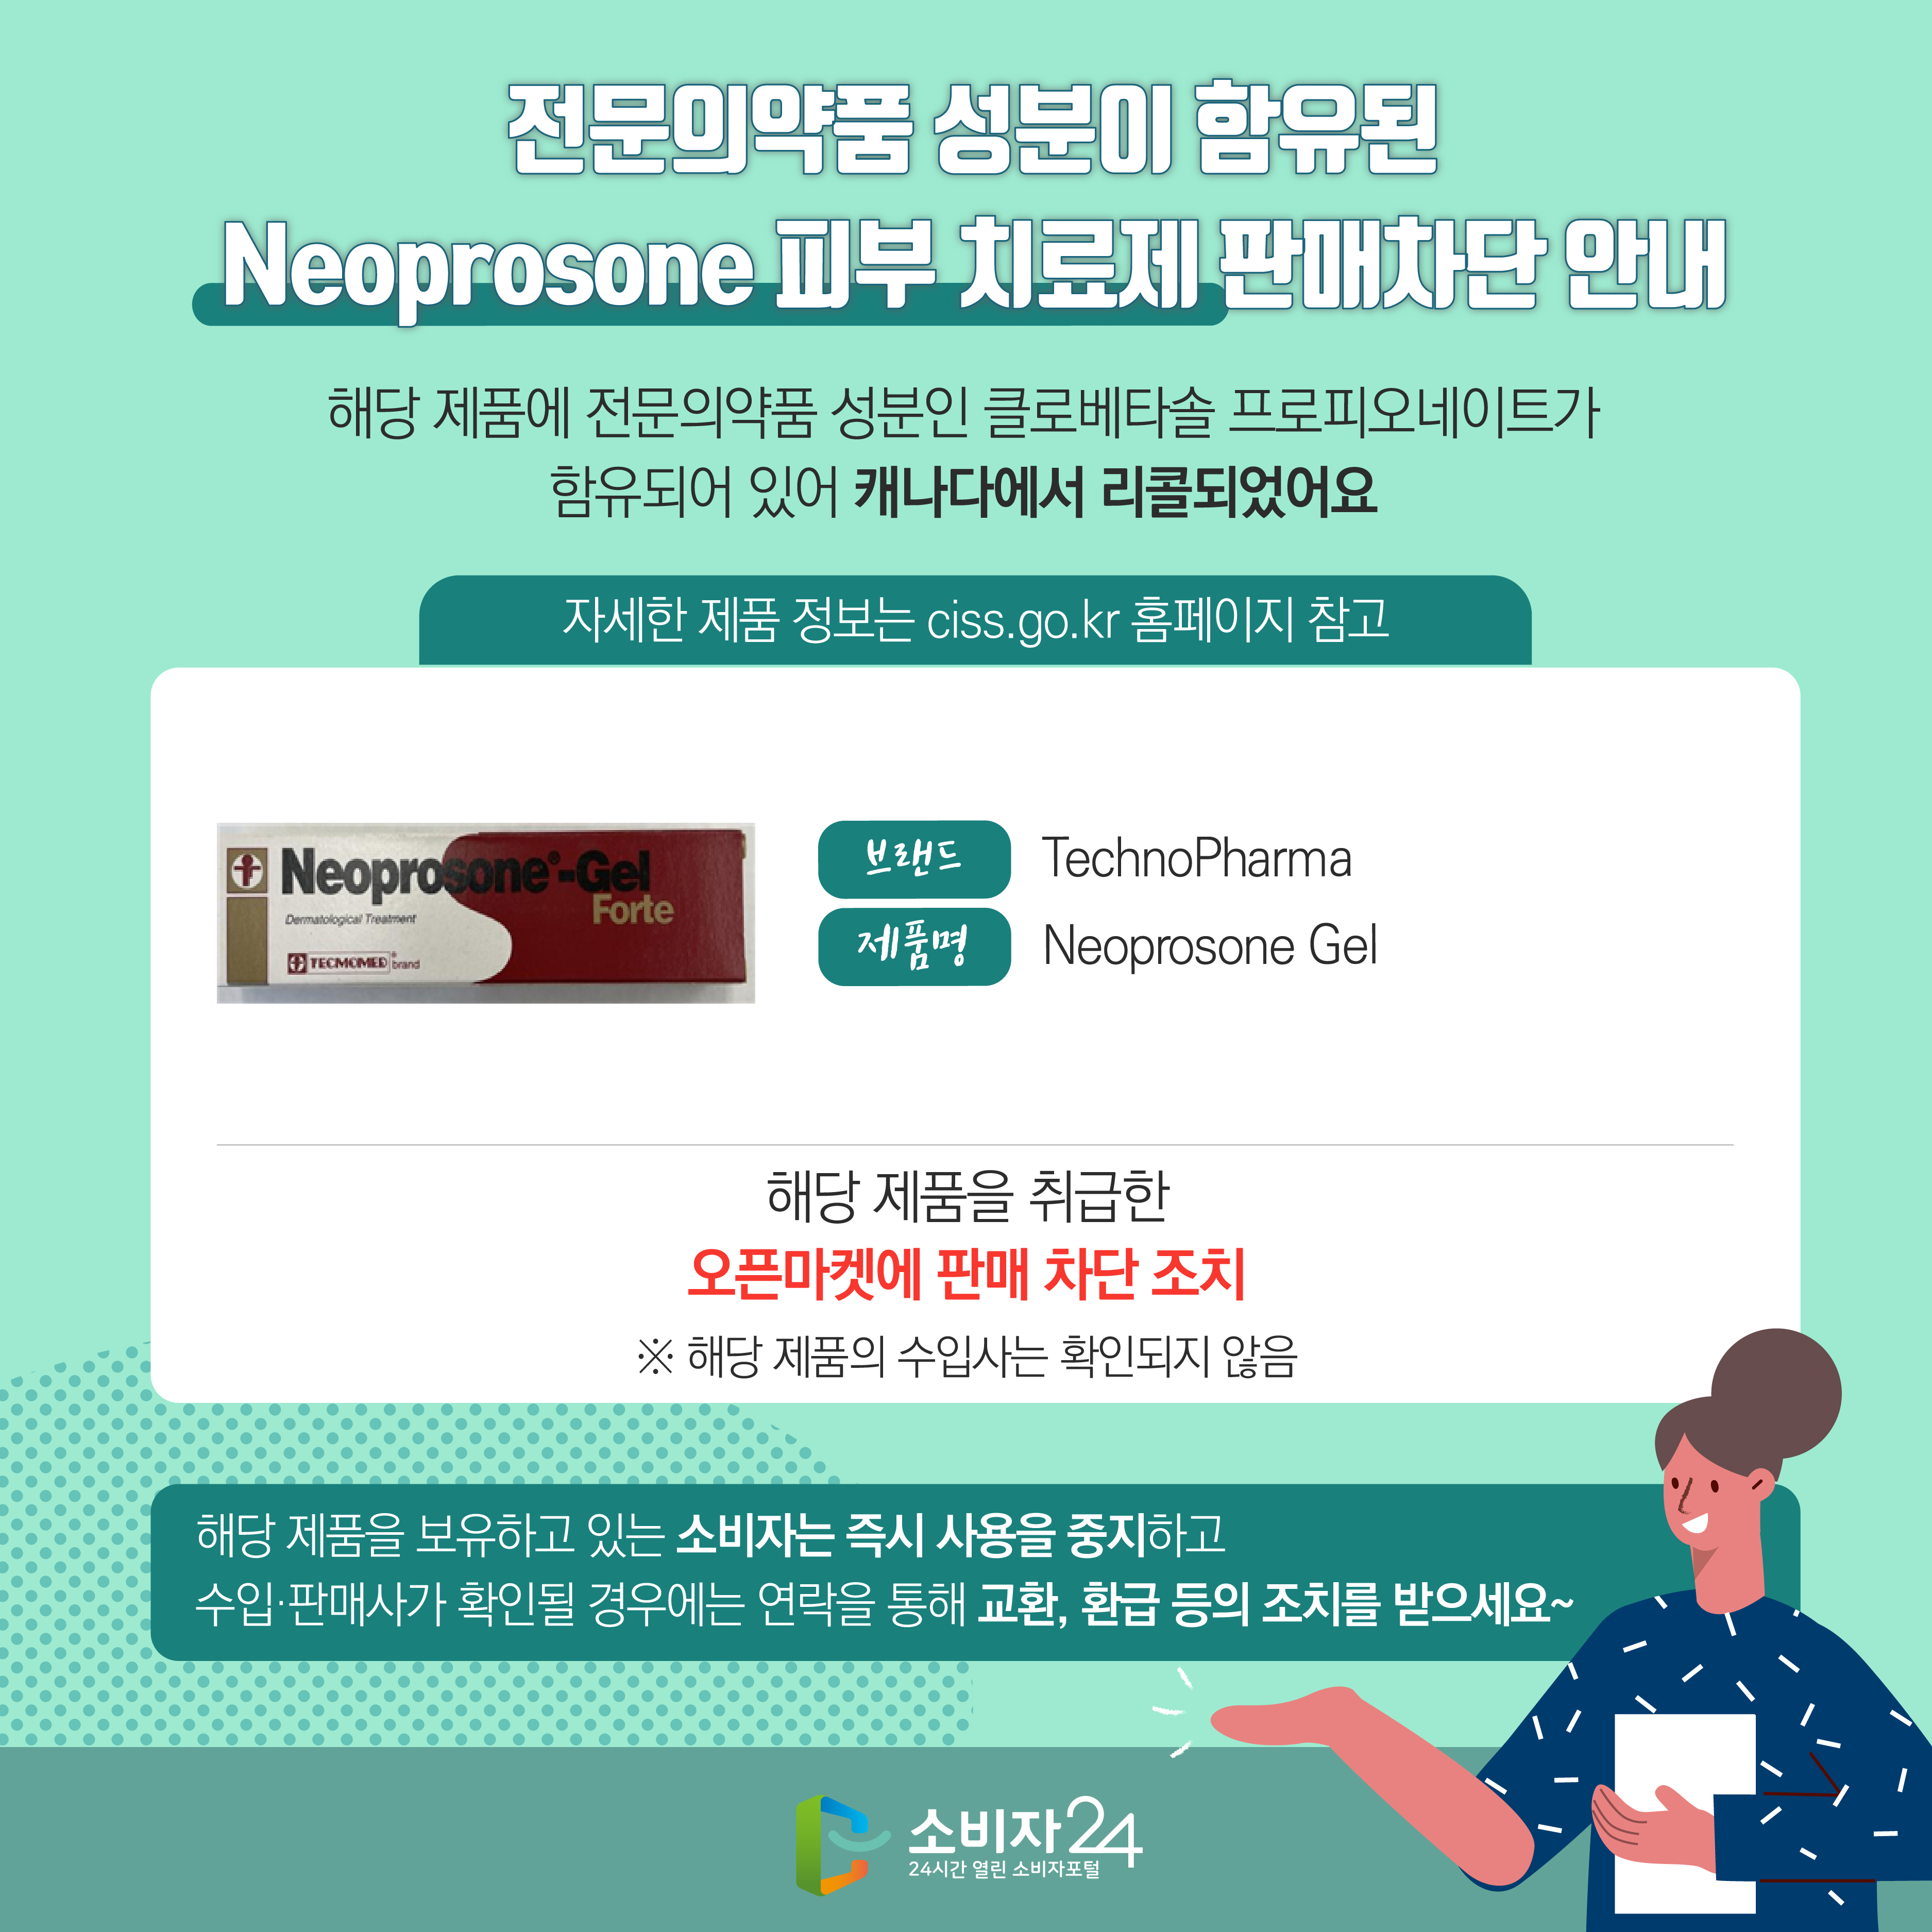 전문의약품 성분이 함유된 Neoprosone 피부 치료제 판매차단 안내 2번째 이미지